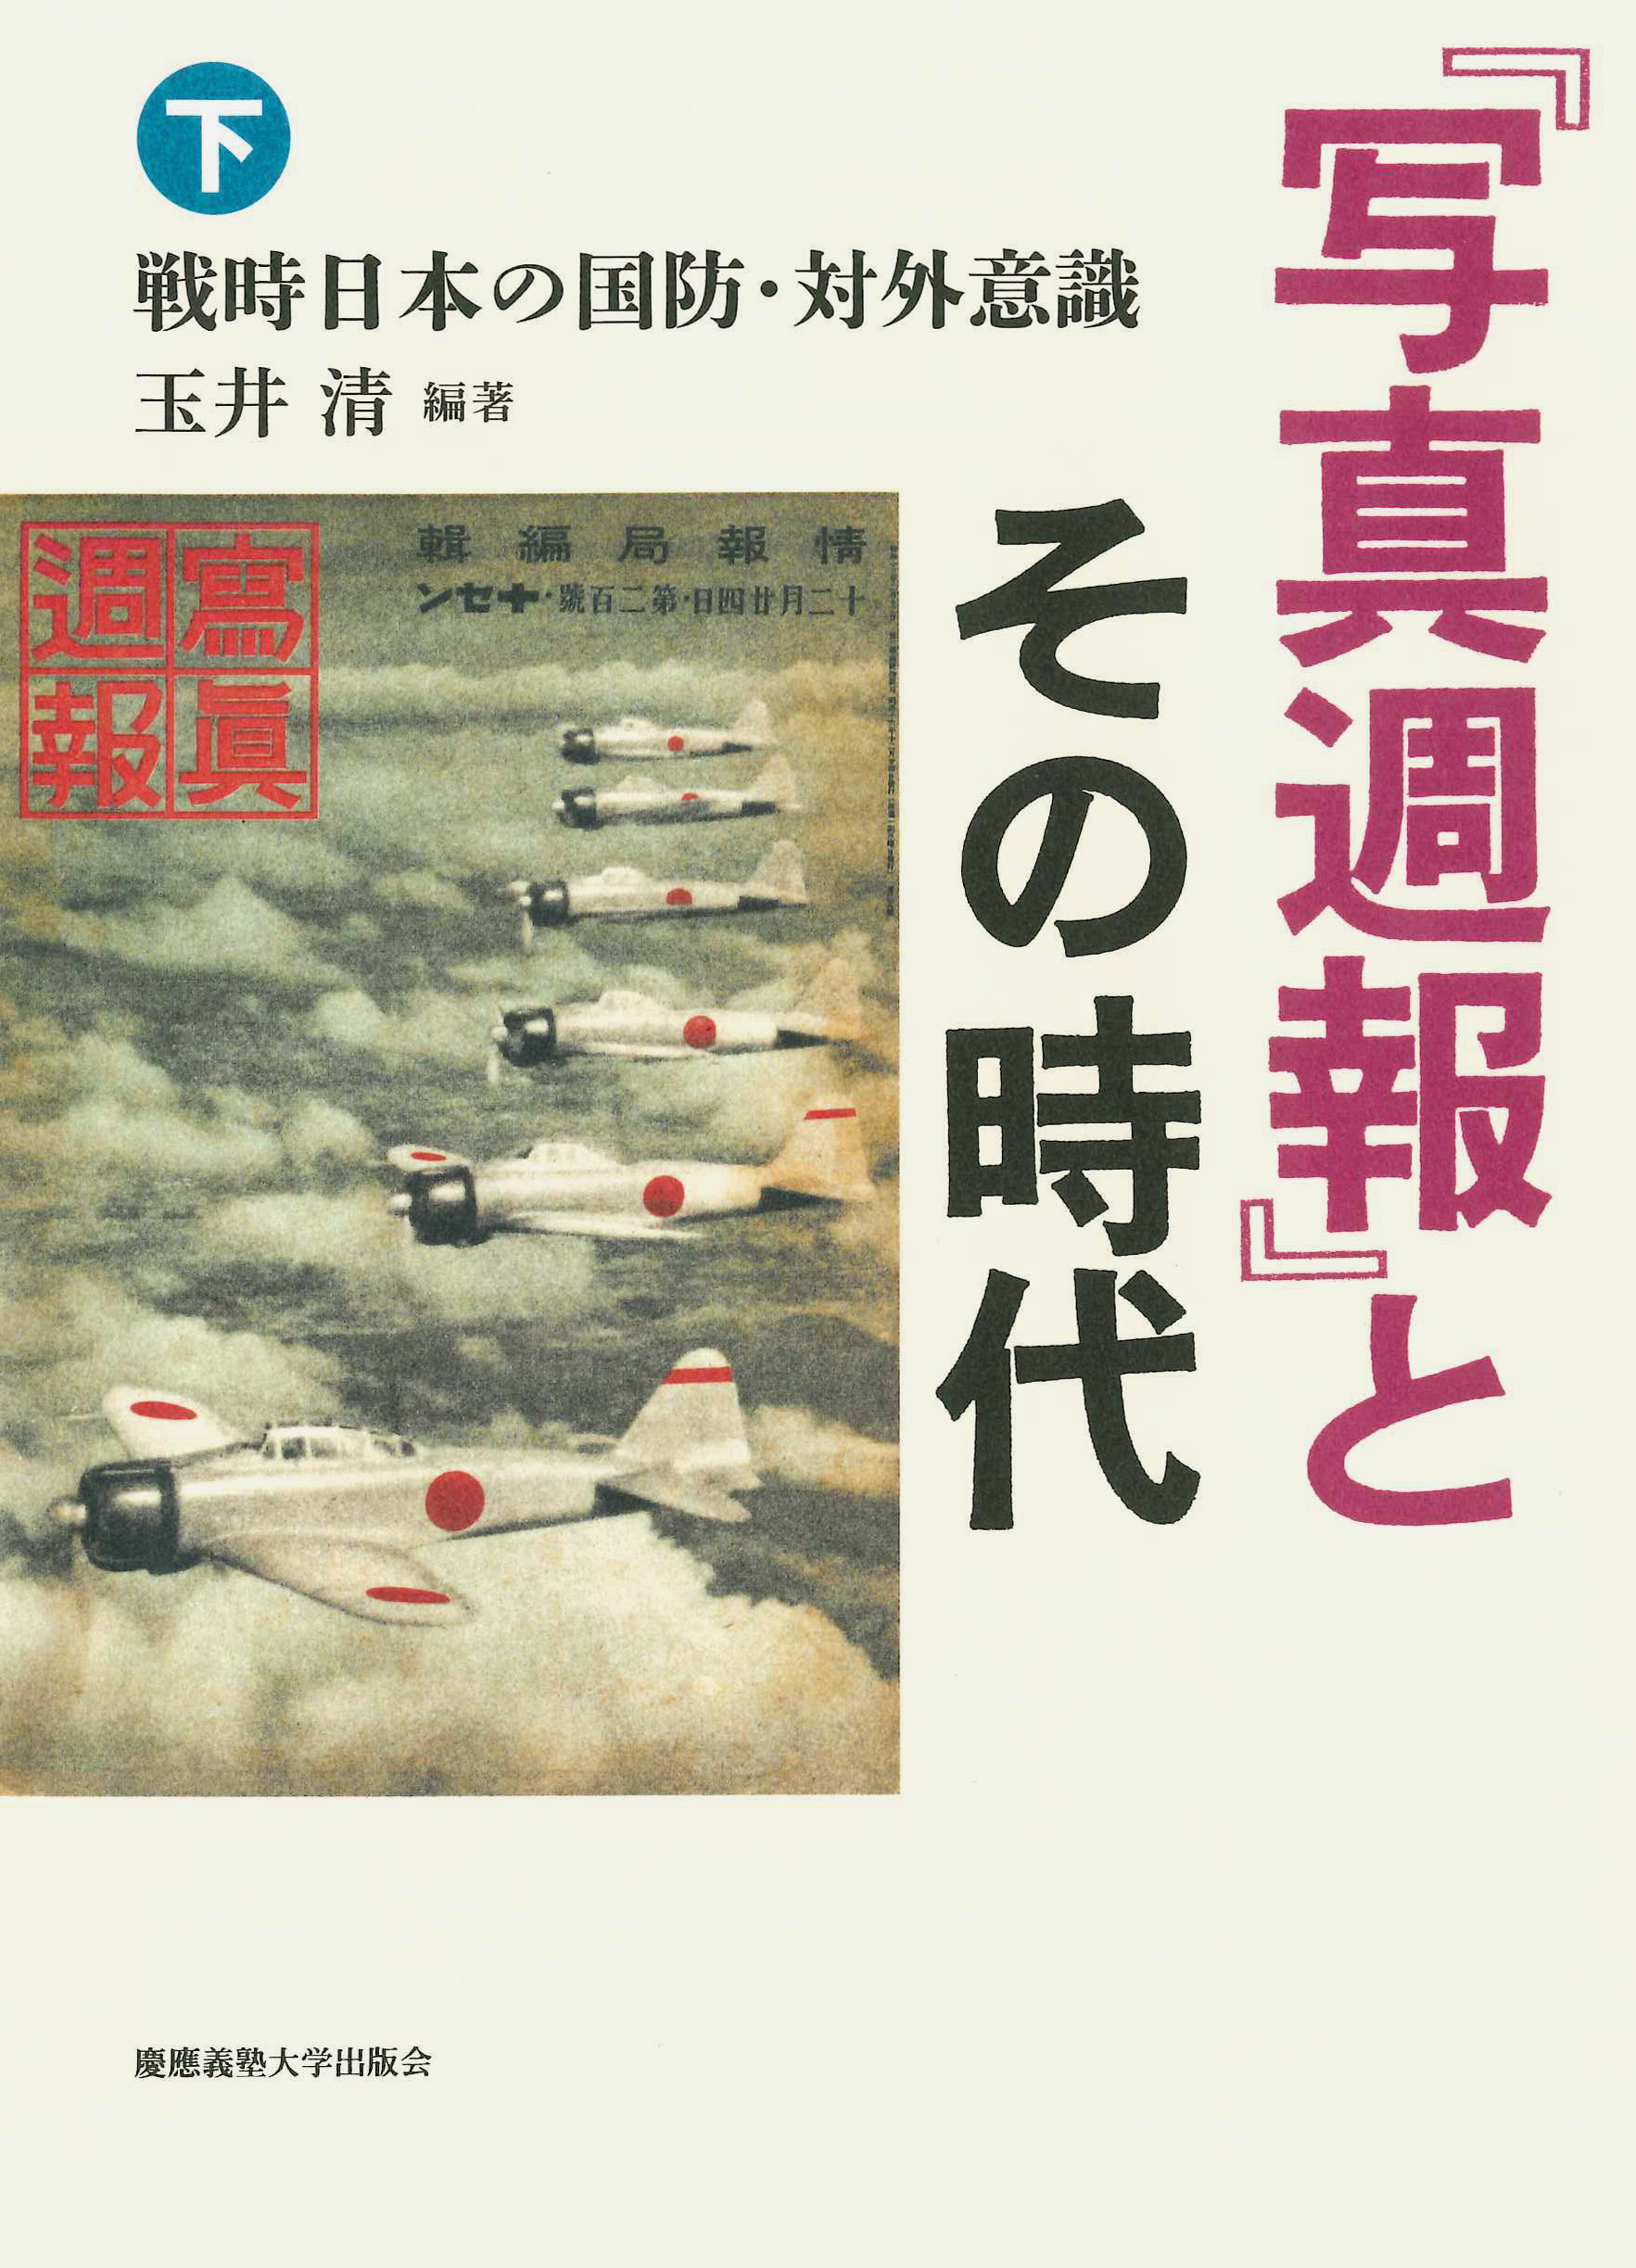 
『写真週報』とその時代（下） 
――戦時日本の国防・対外意識
玉井 清編著